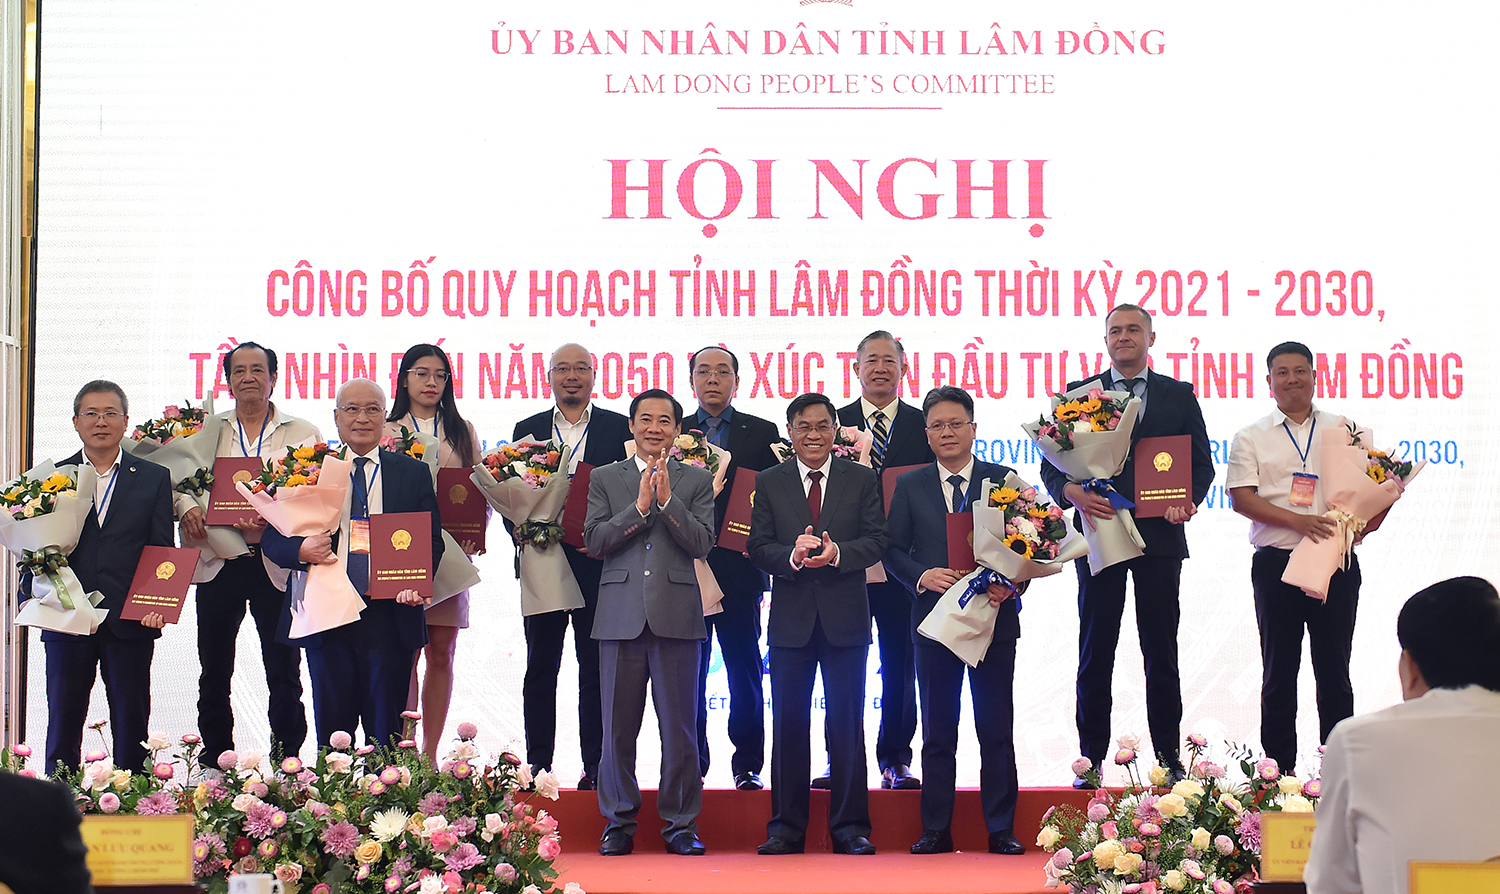 Lãnh đạo tỉnh Lâm Đồng trao quyết định, chủ trương đầu tư cho các nhà đầu tư vào Lâm Đồng - Ảnh: VGP/Hải Minh